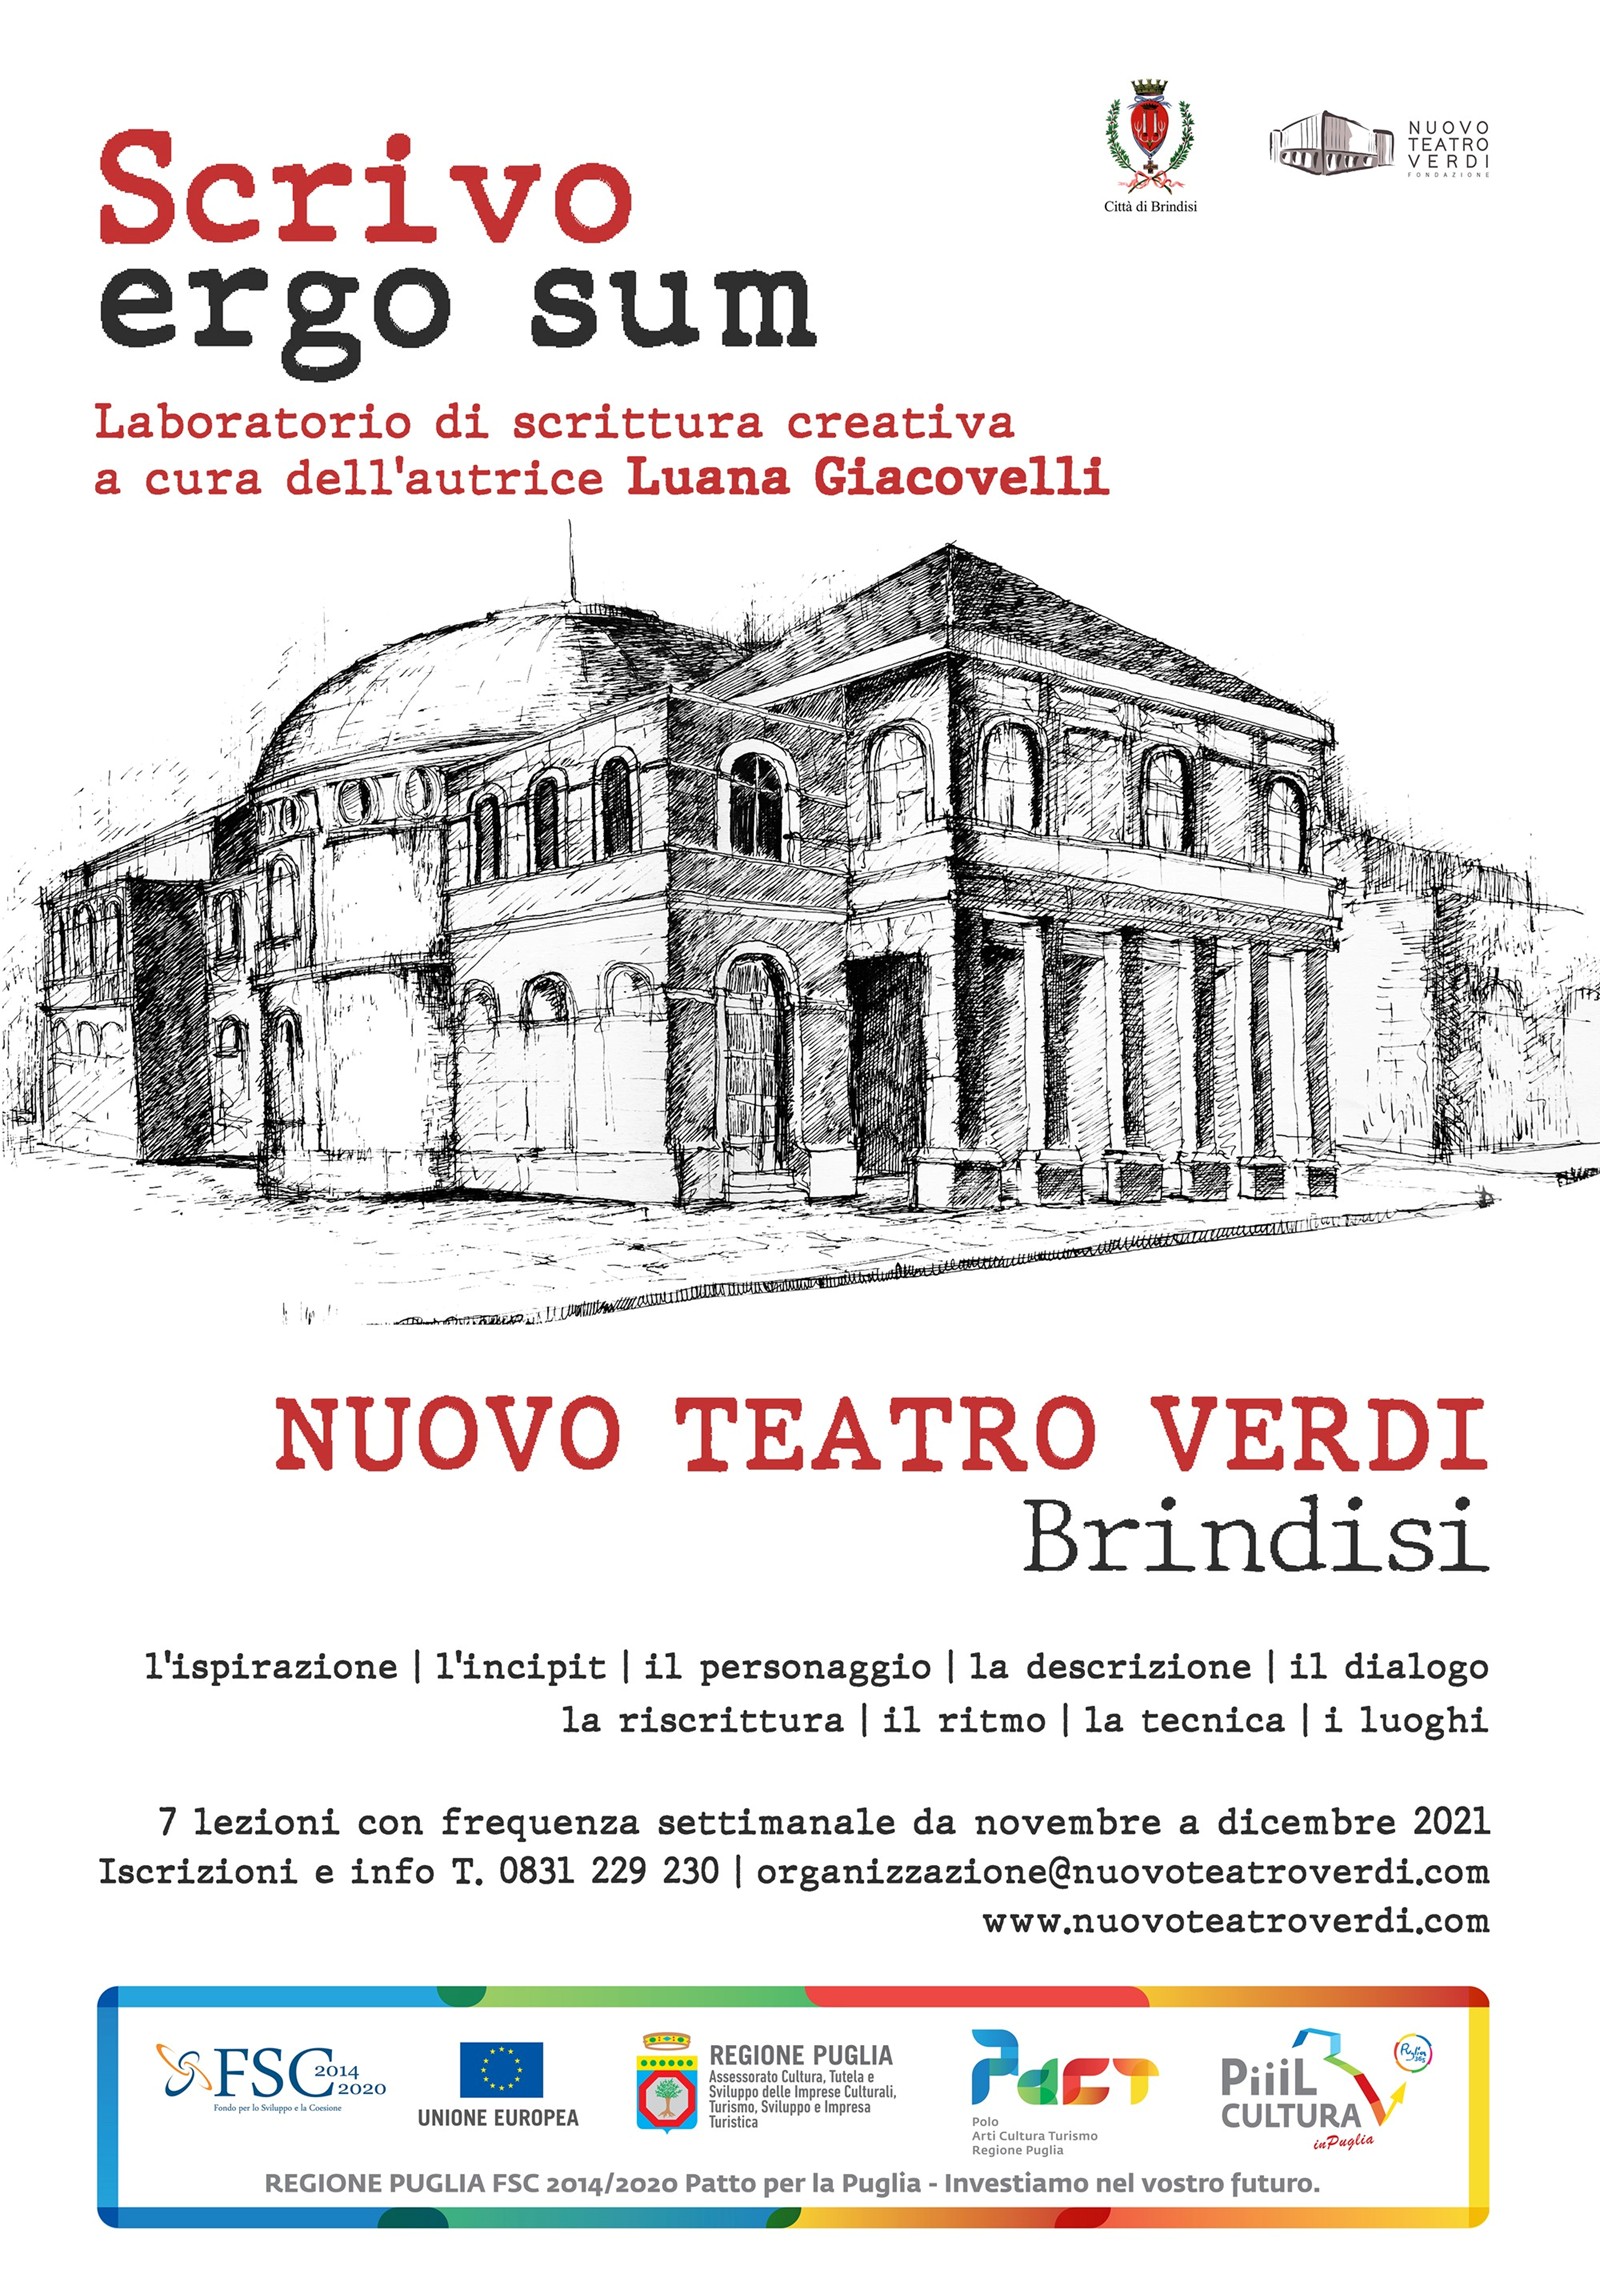 Nuovo Teatro Verdi: al via un laboratorio di scrittura creativa